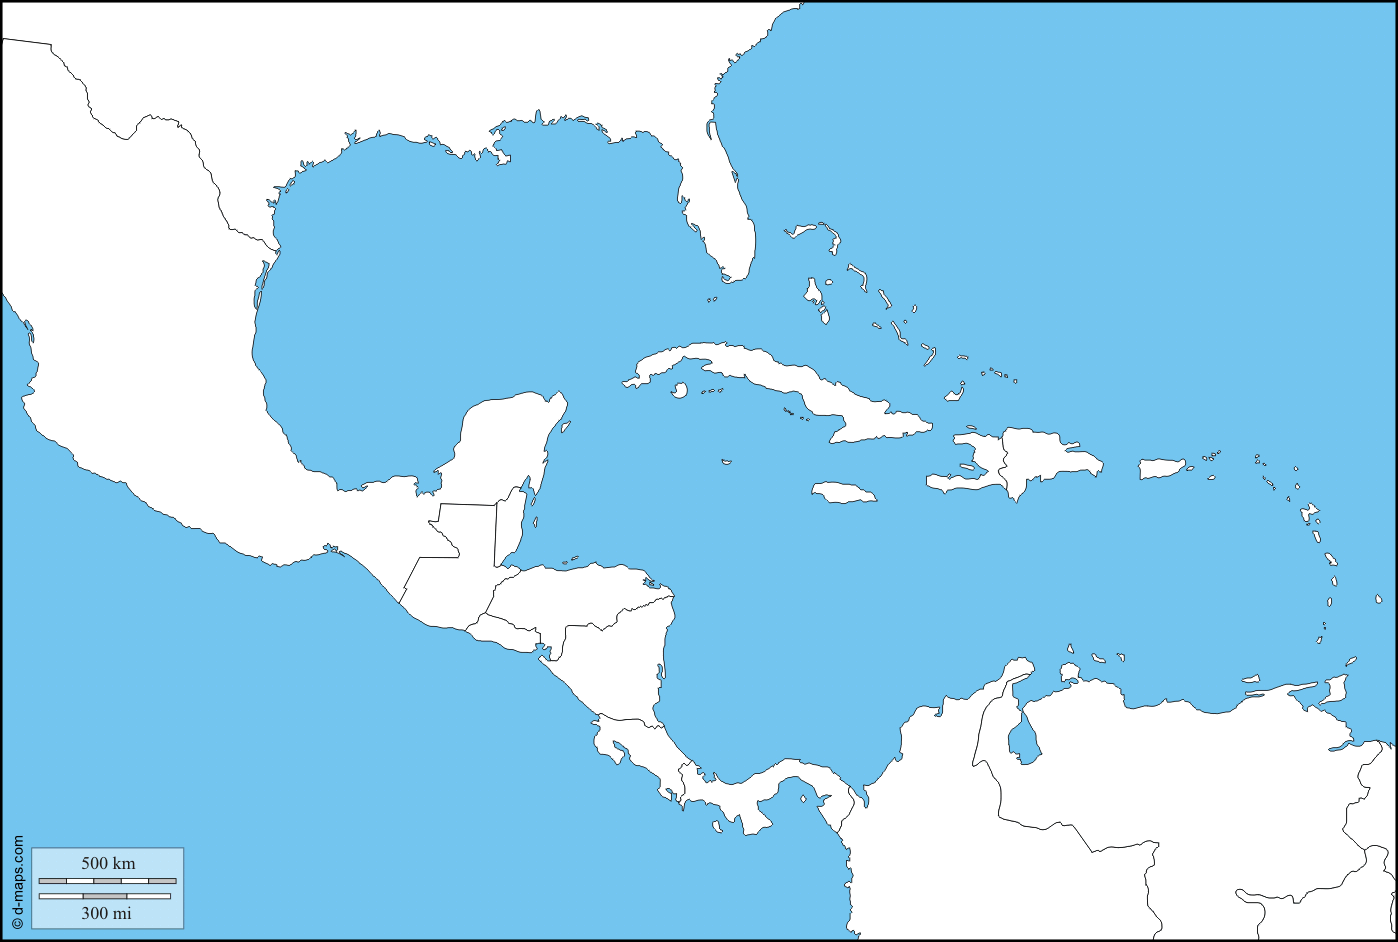 Juegos de Geografía | Juego de América Central y Caribe: Países y capitales  en el mapa | Cerebriti